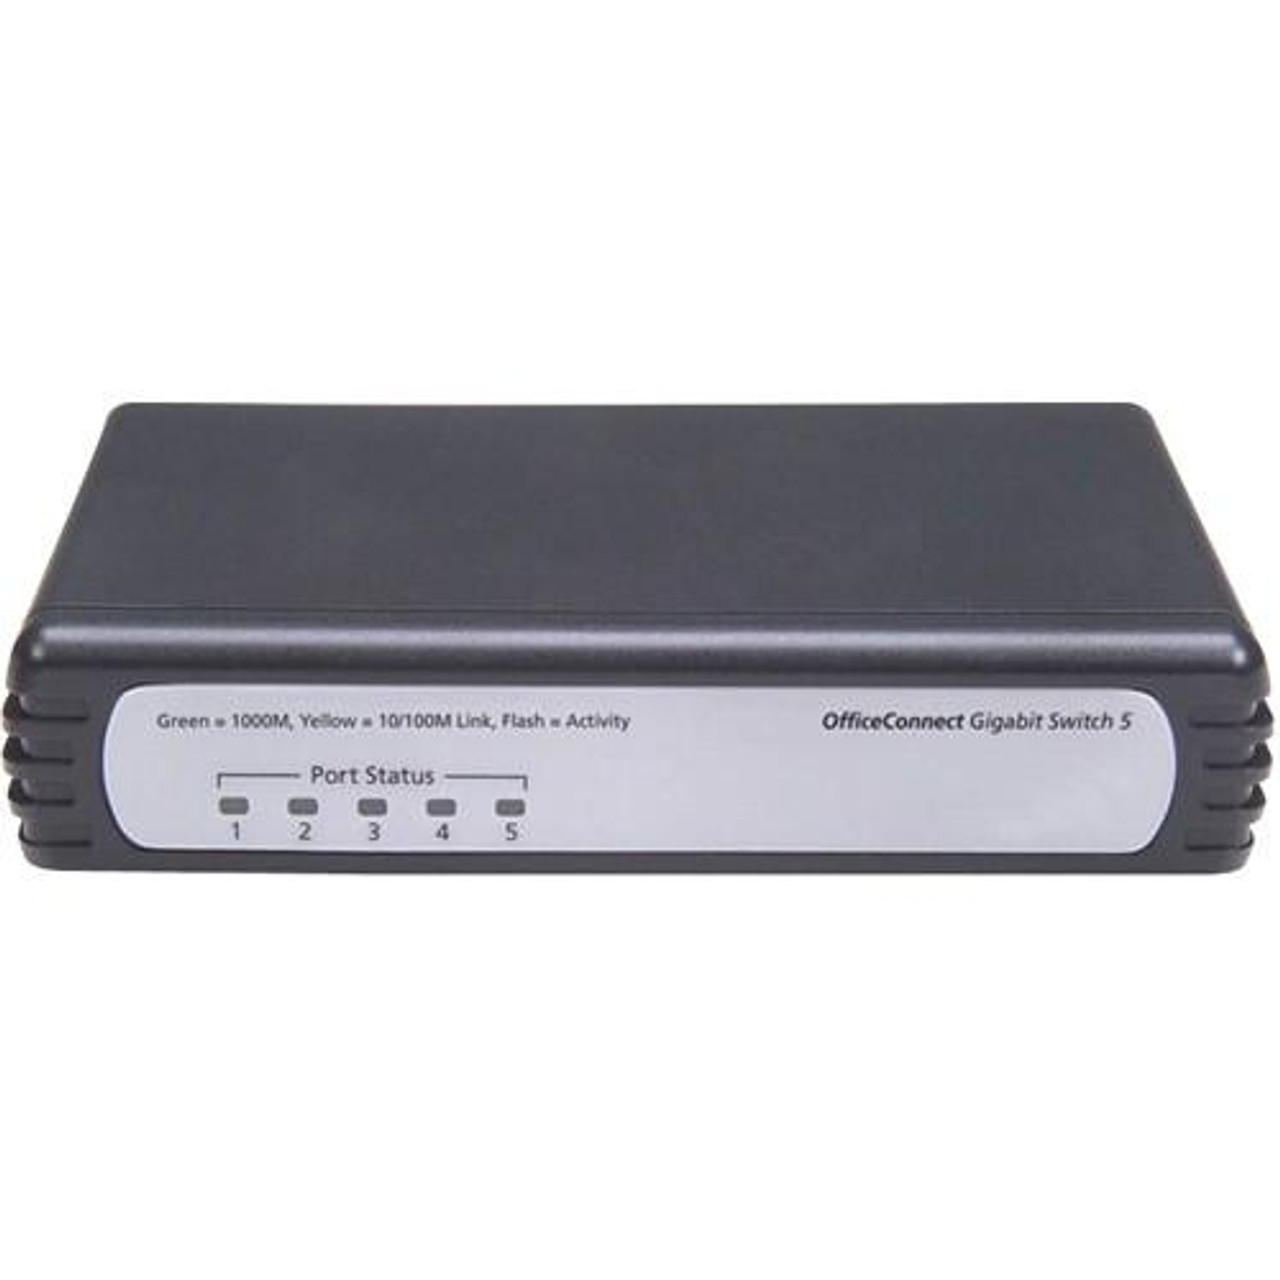 JD838A HP V1405C-5G Ethernet Fast Ethernet Switch 5 Port 5 10/100/1000Base-T RJ-45 (Refurbished)